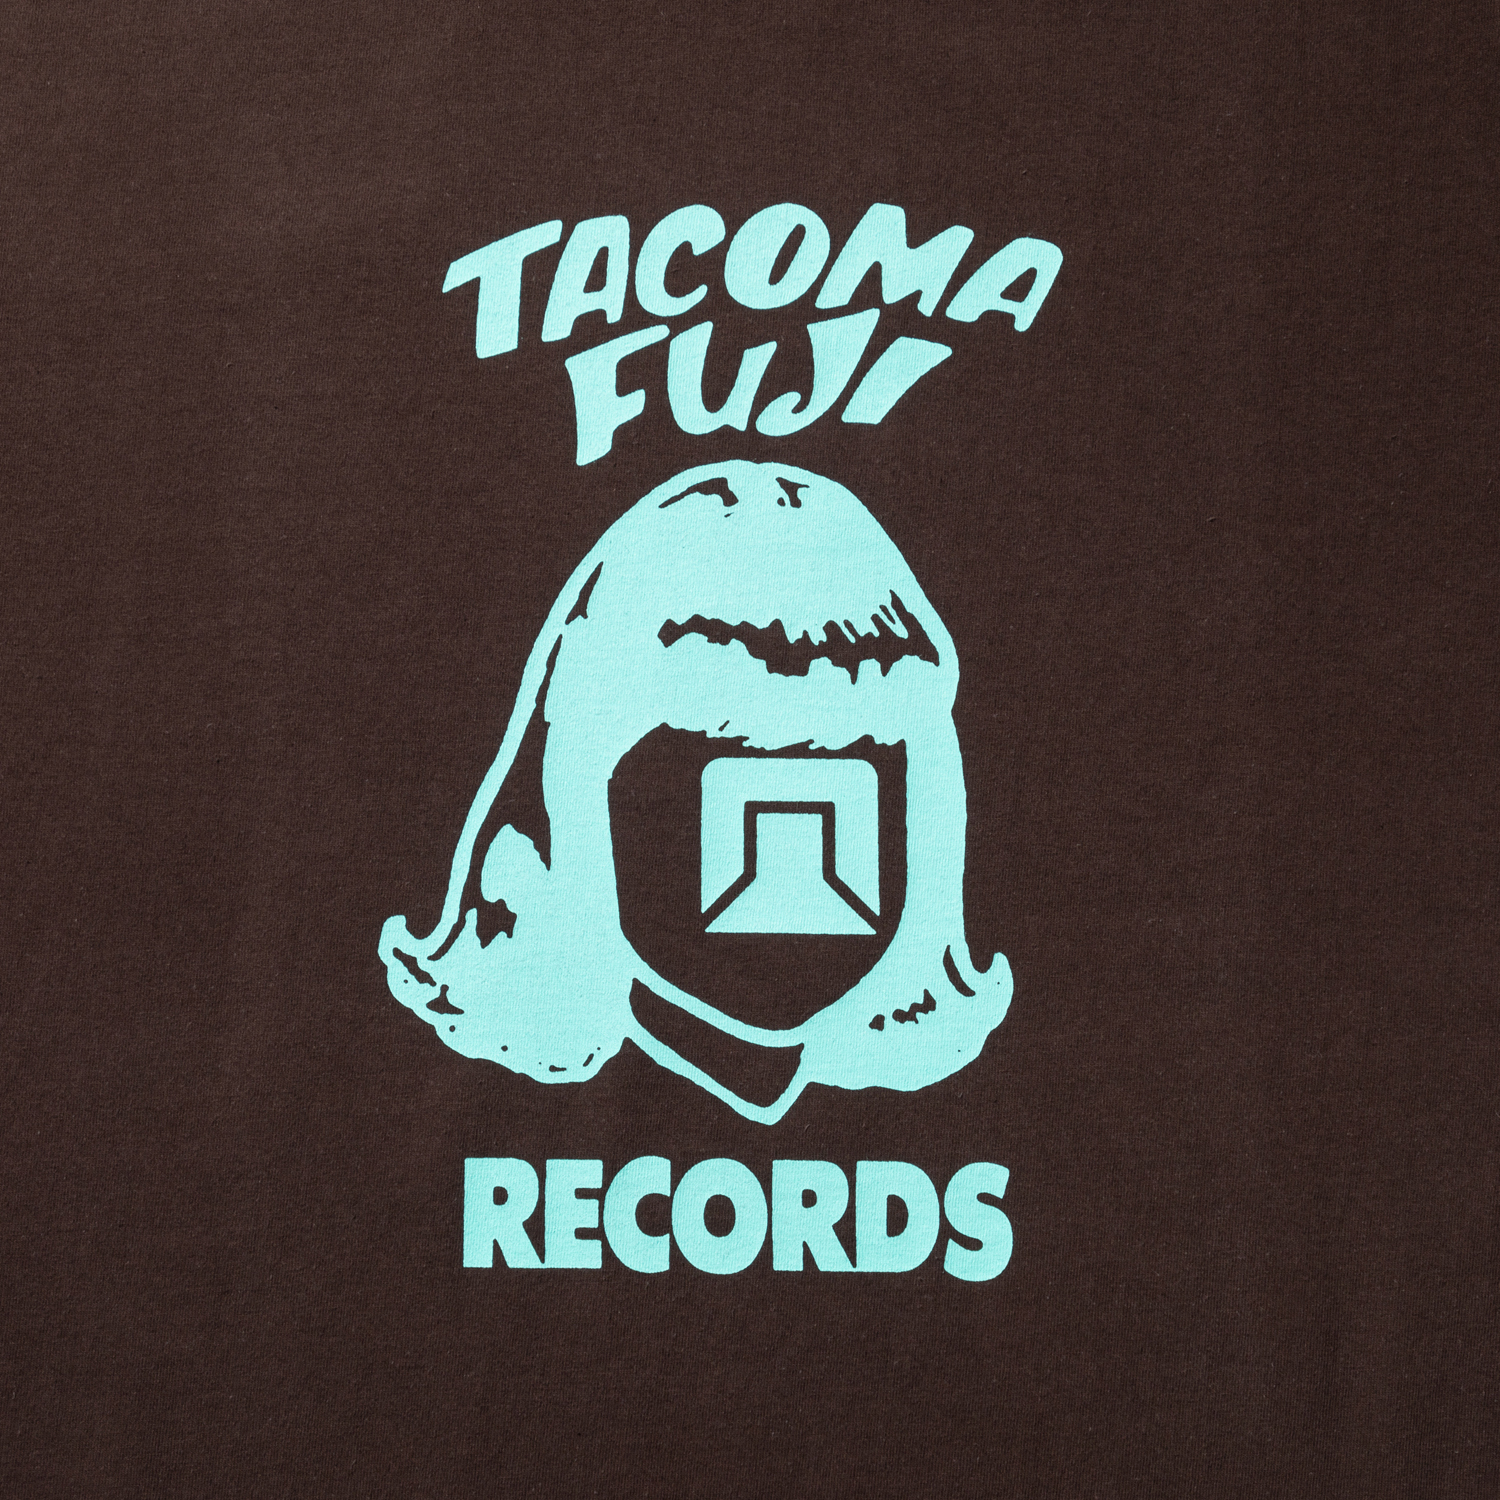 TACOMA FUJI RECORDS LOGO ’22